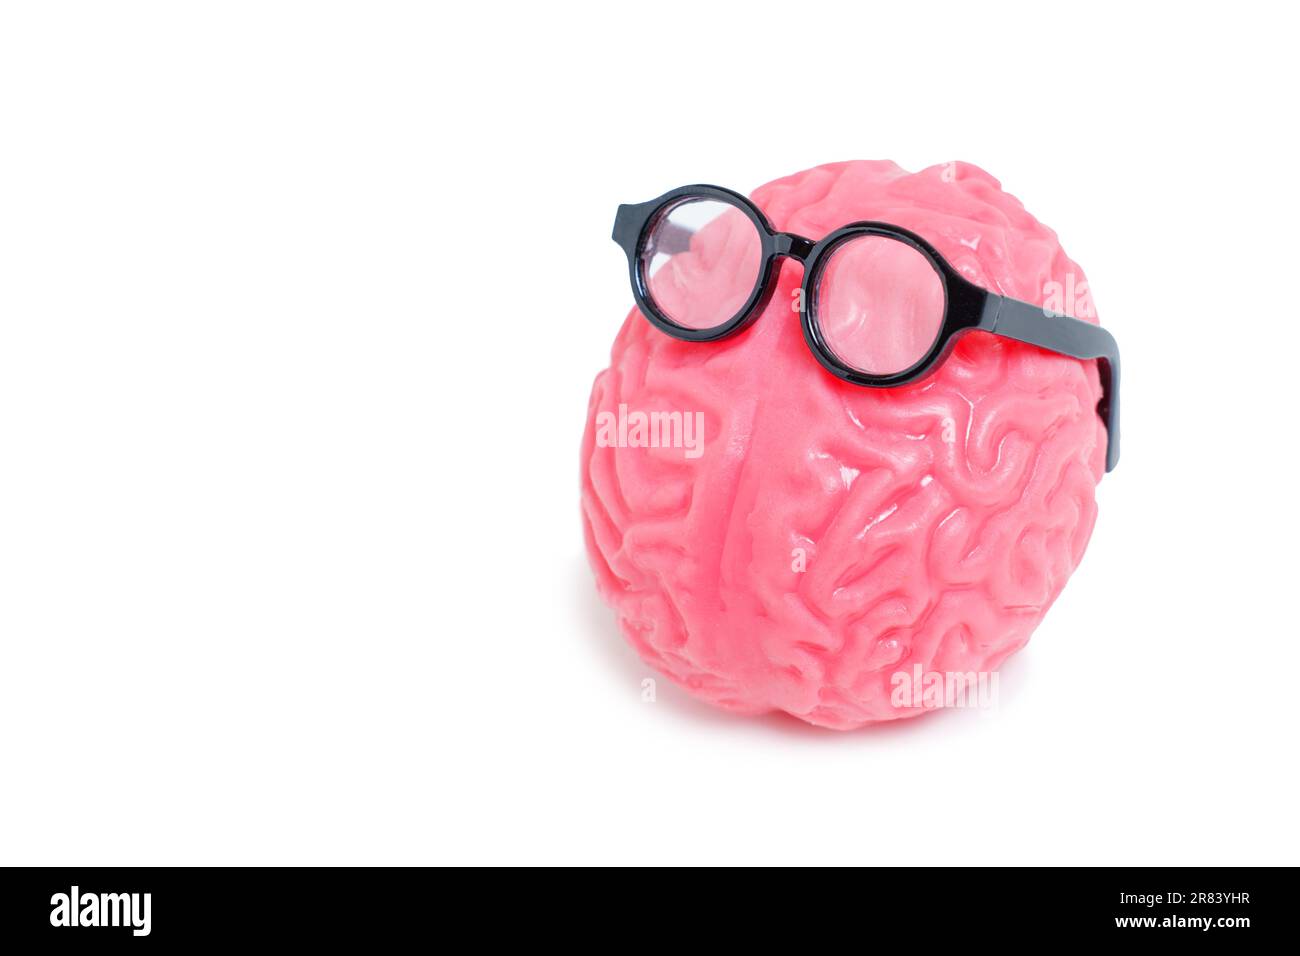 Das gelee-ähnliche anatomische Modell des menschlichen Gehirns, geschmückt mit einer stilvollen Brille, isoliert auf Weiß. Bildungs- und Lernkonzept. Stockfoto